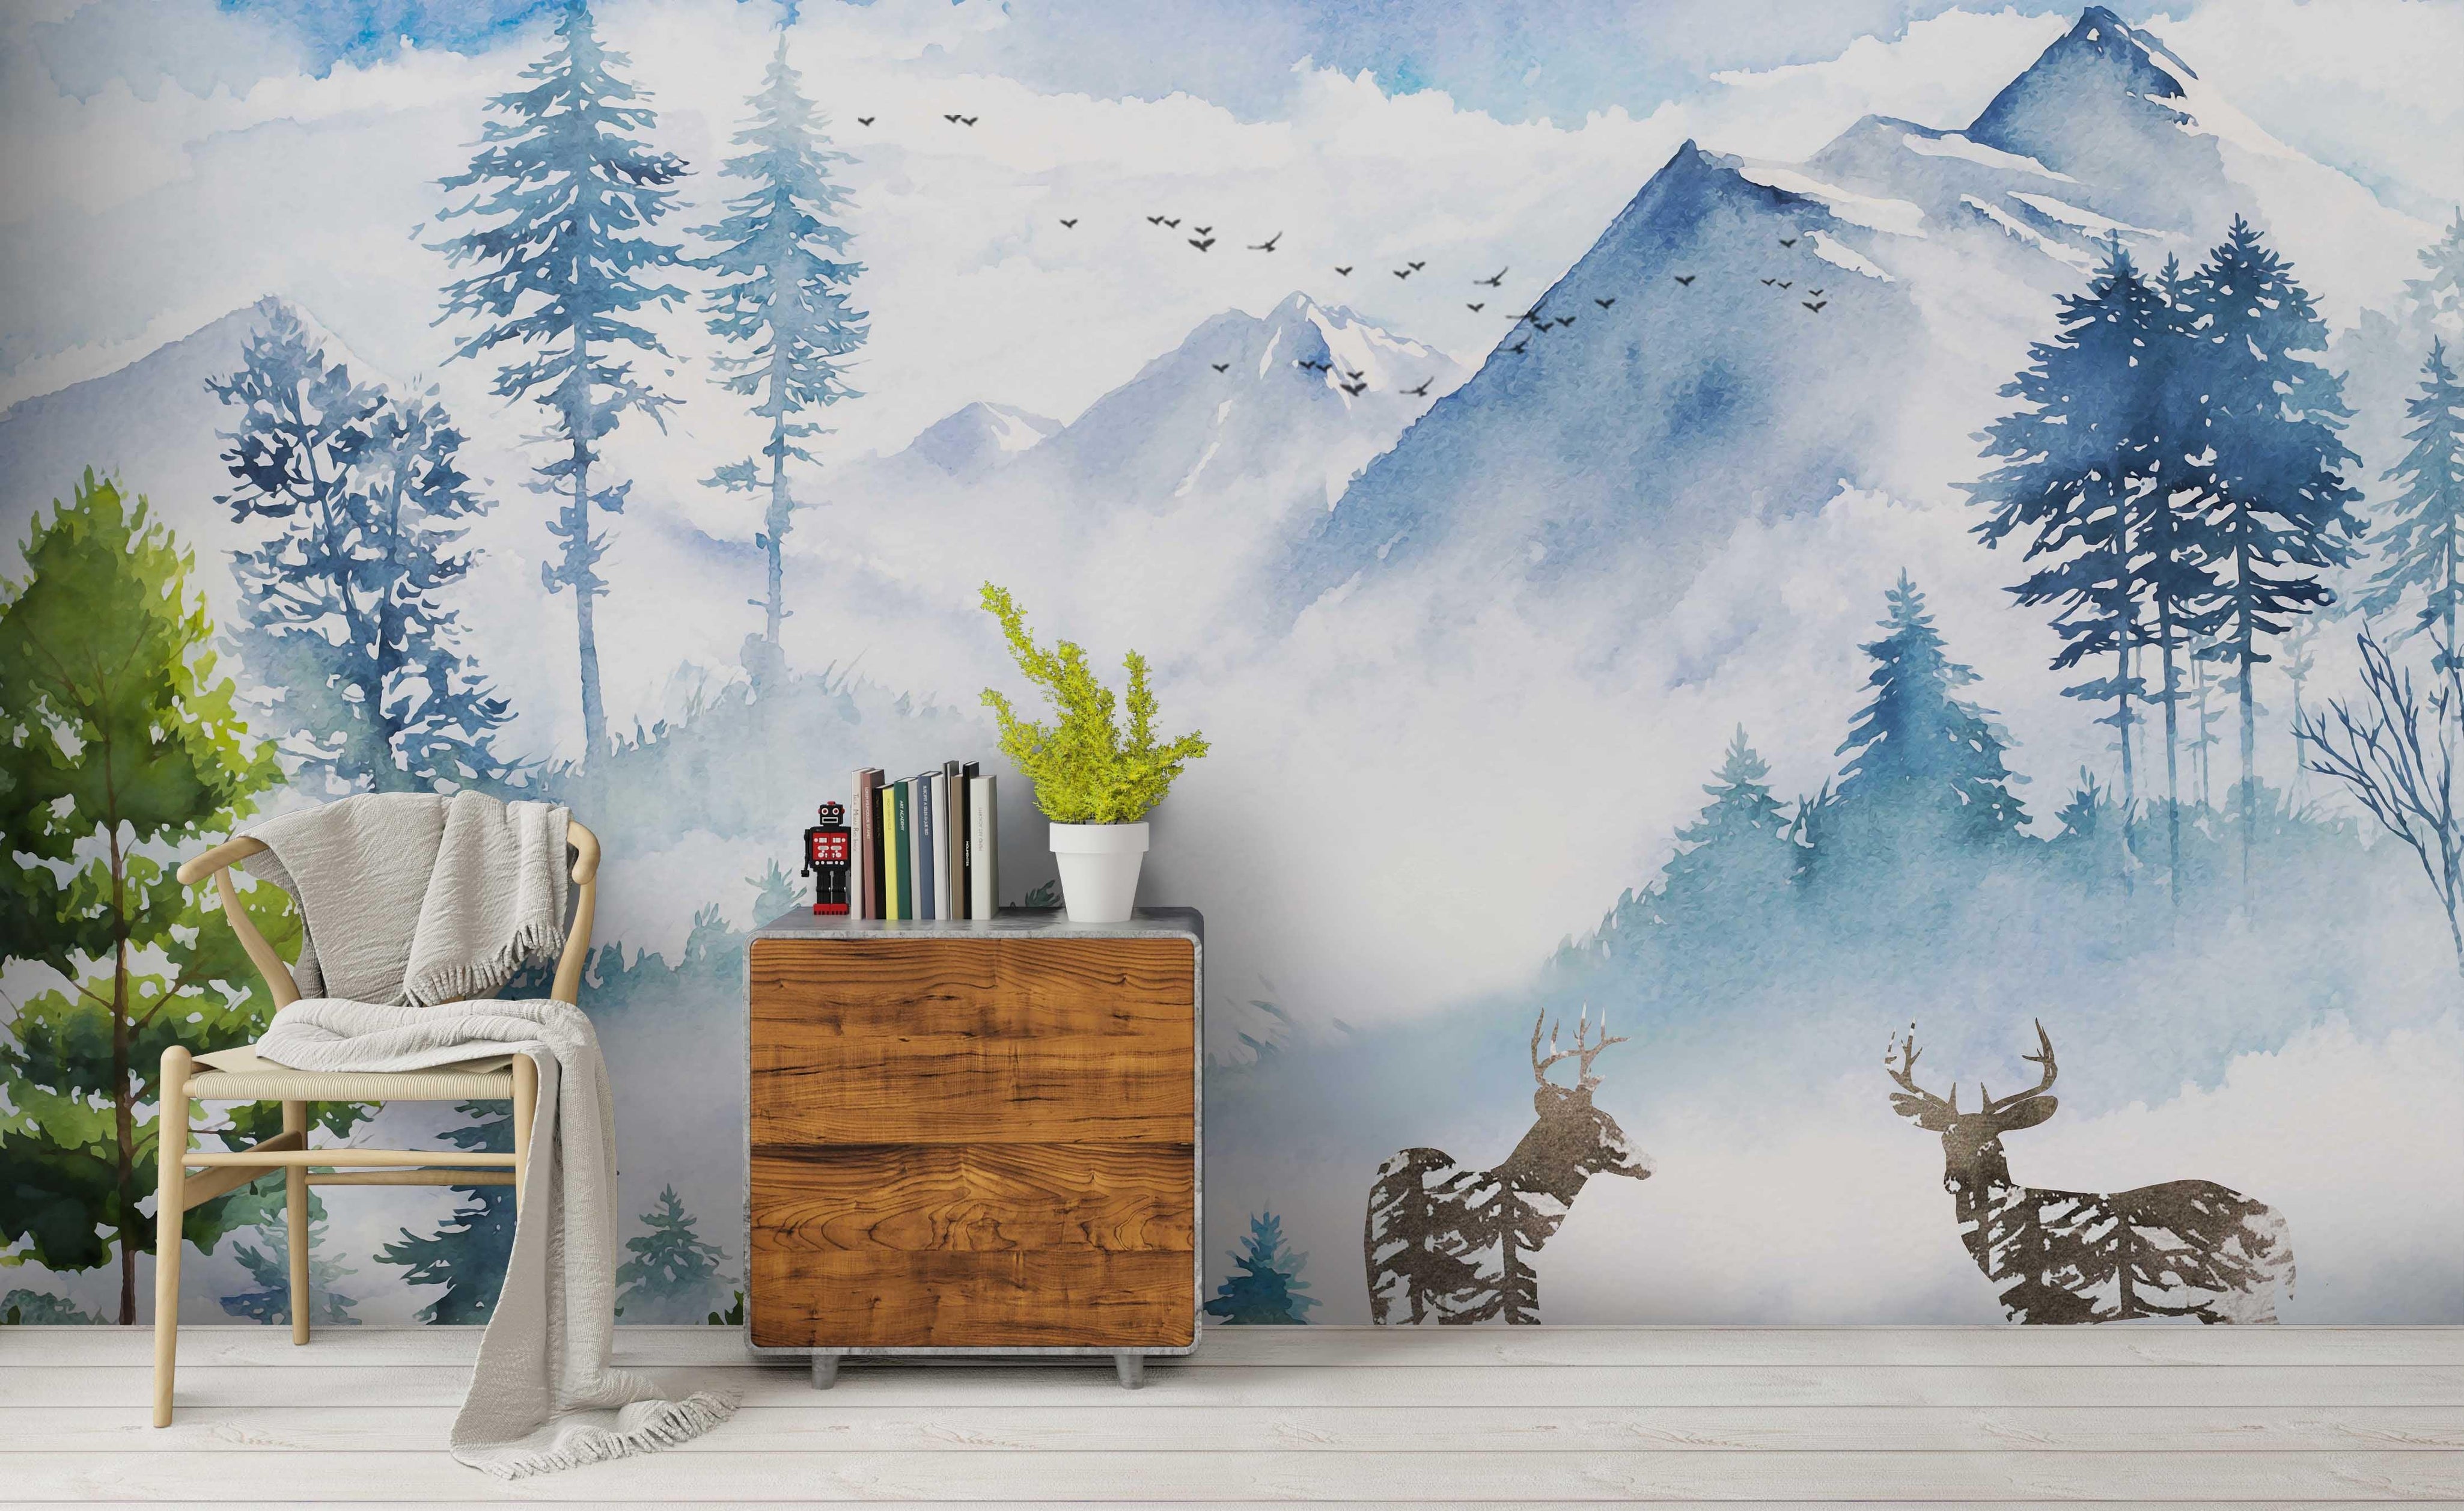 3D Snow Mountain Wall Mural Wallpaper 221- Jess Art Decoration